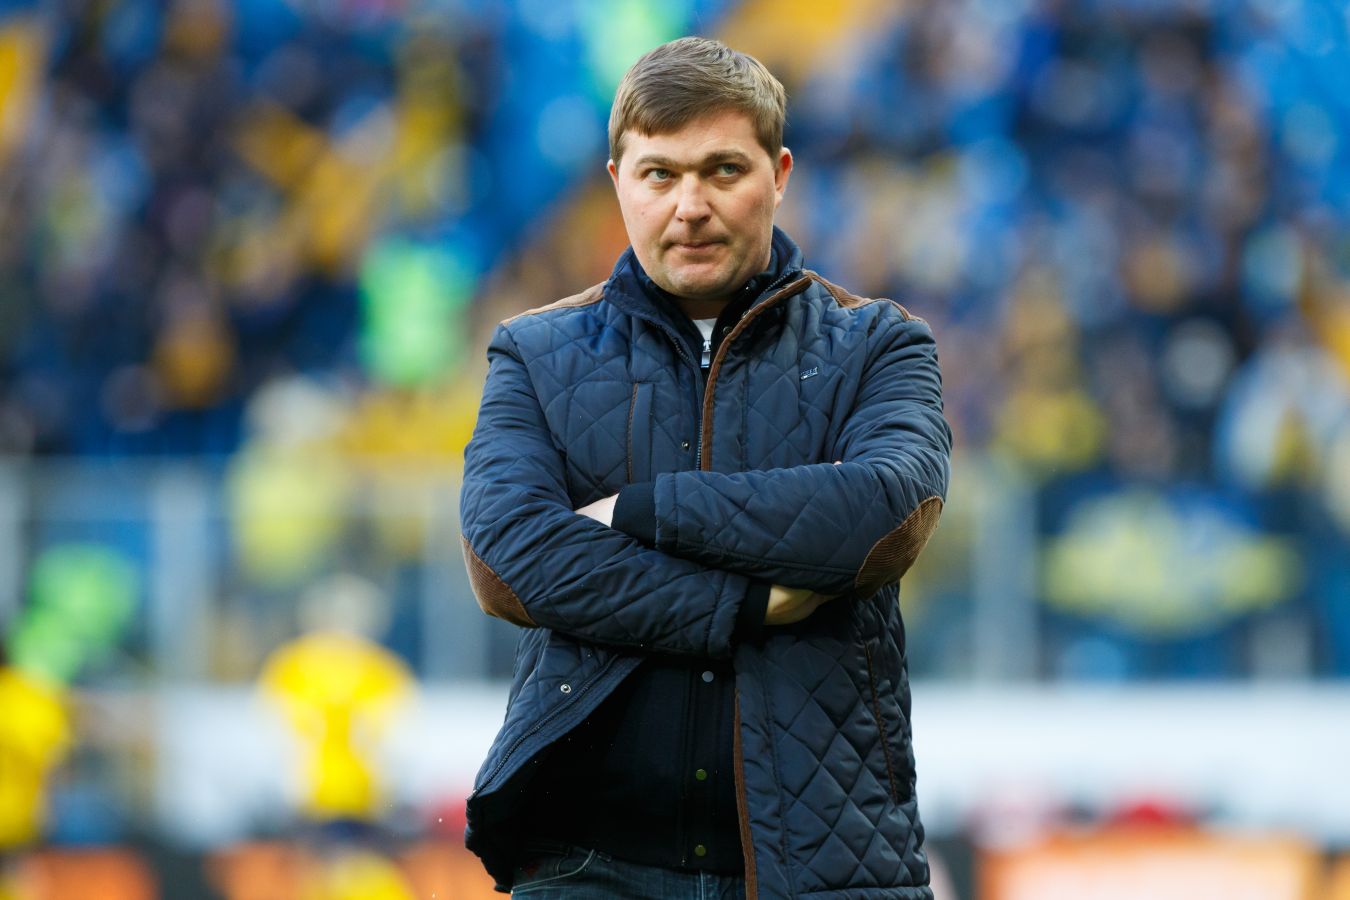 Алексей Стукалов заявил, что станет главным тренером «Ротора»